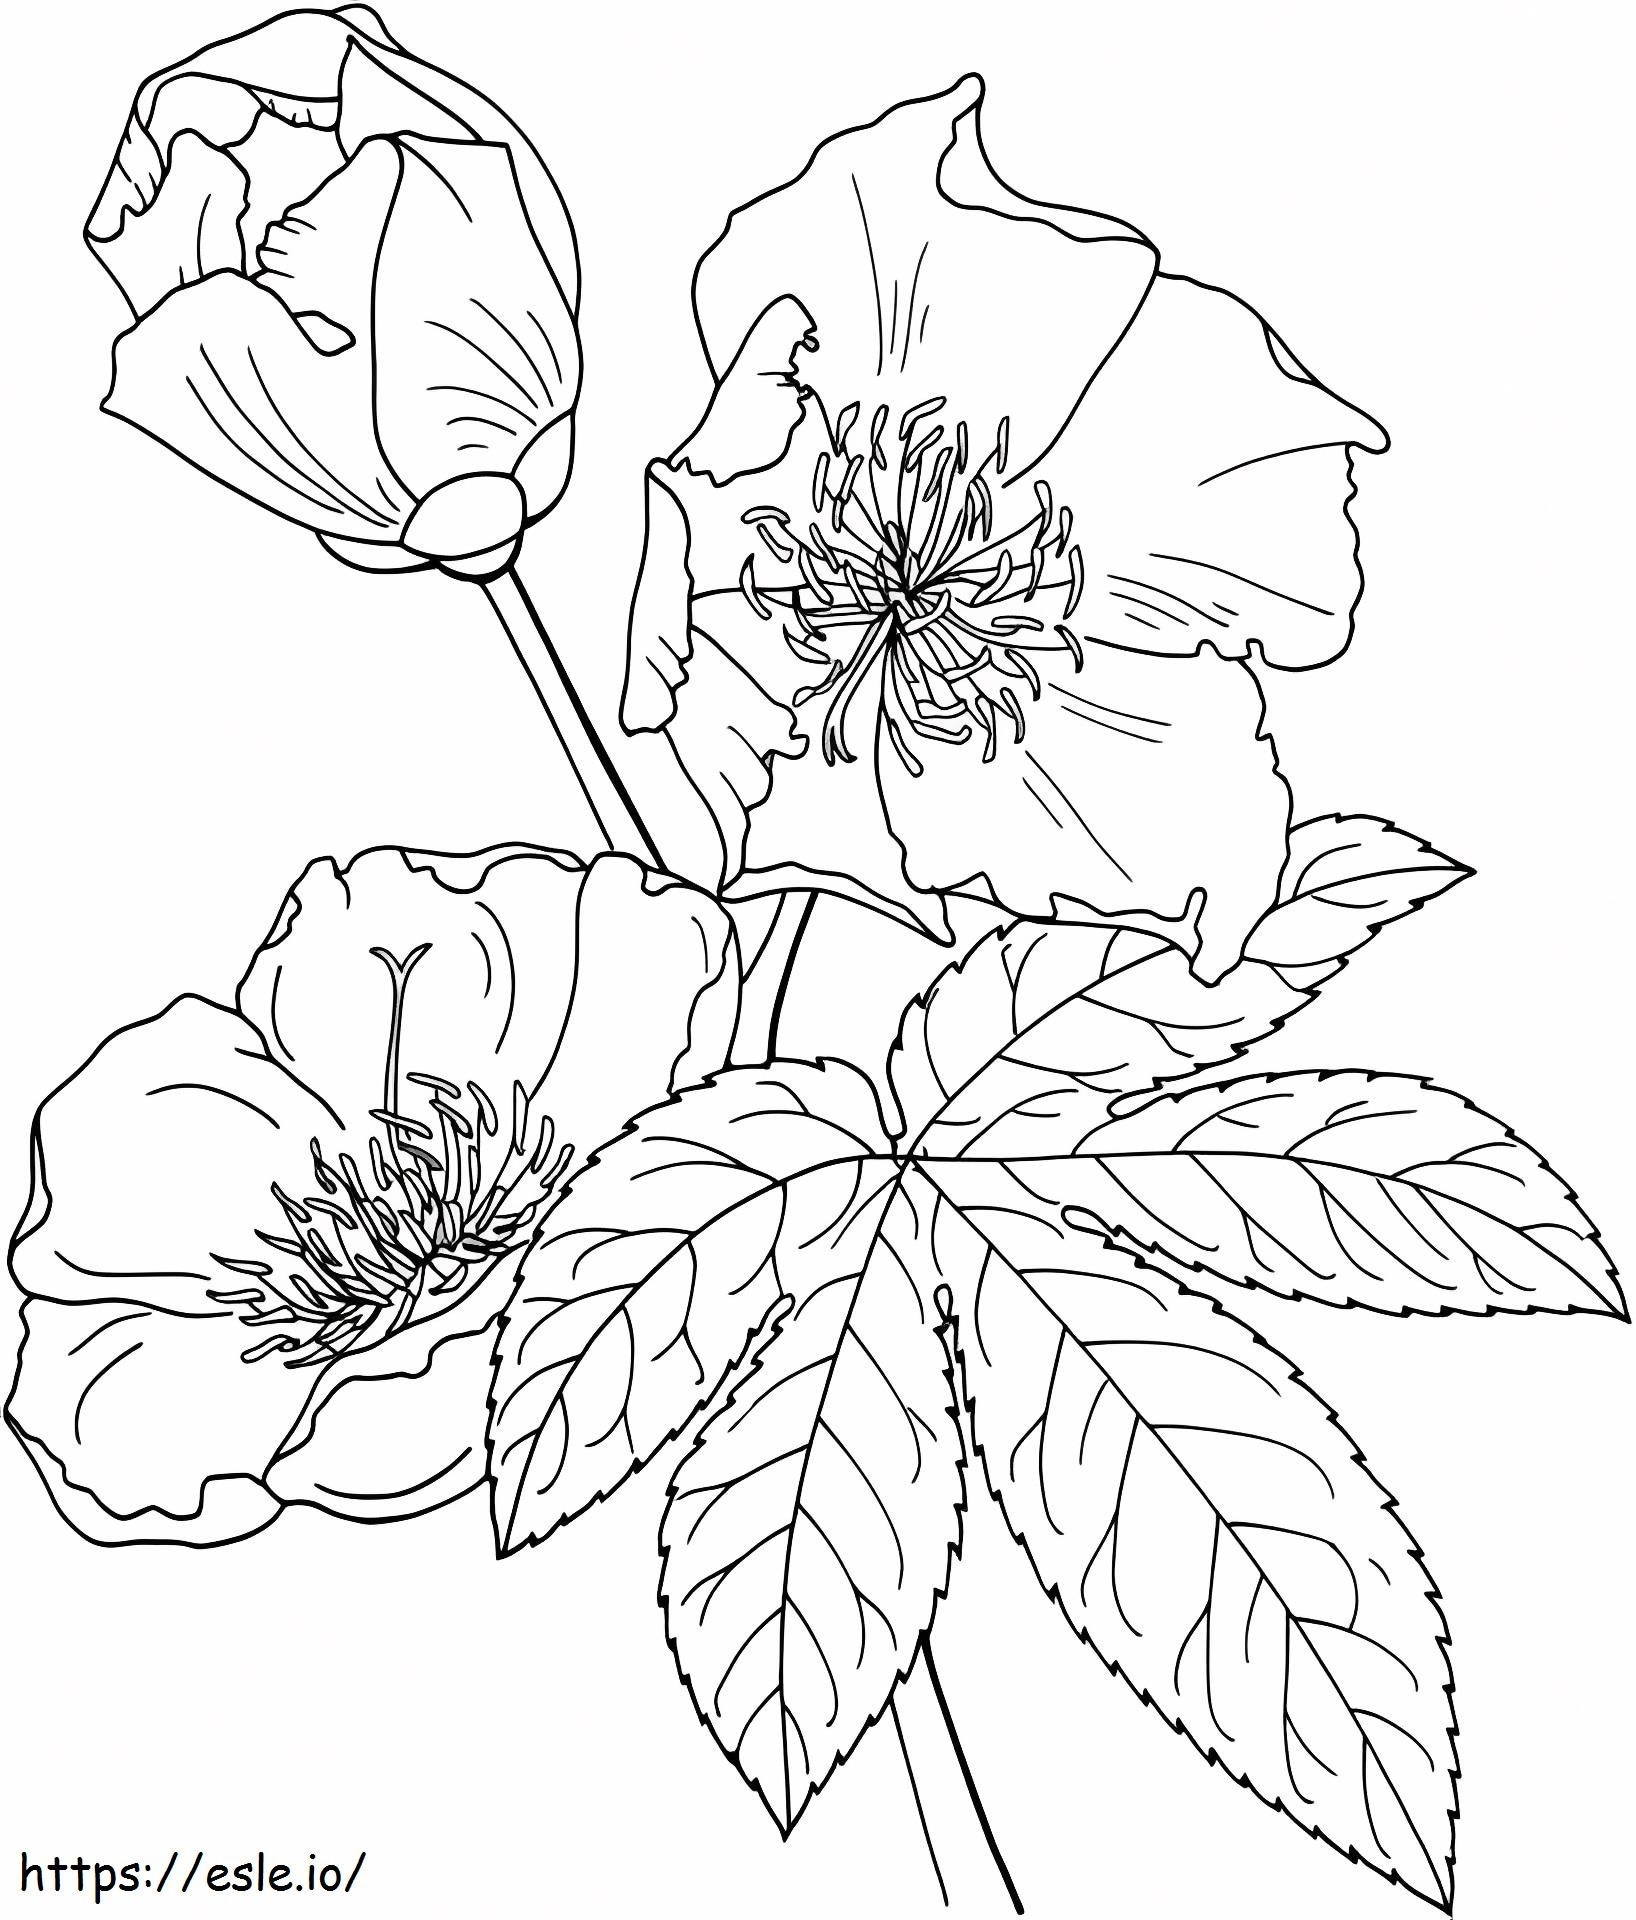 1527065135_Cochlospermum Vitifolium oder Butterblumenbaum ausmalbilder